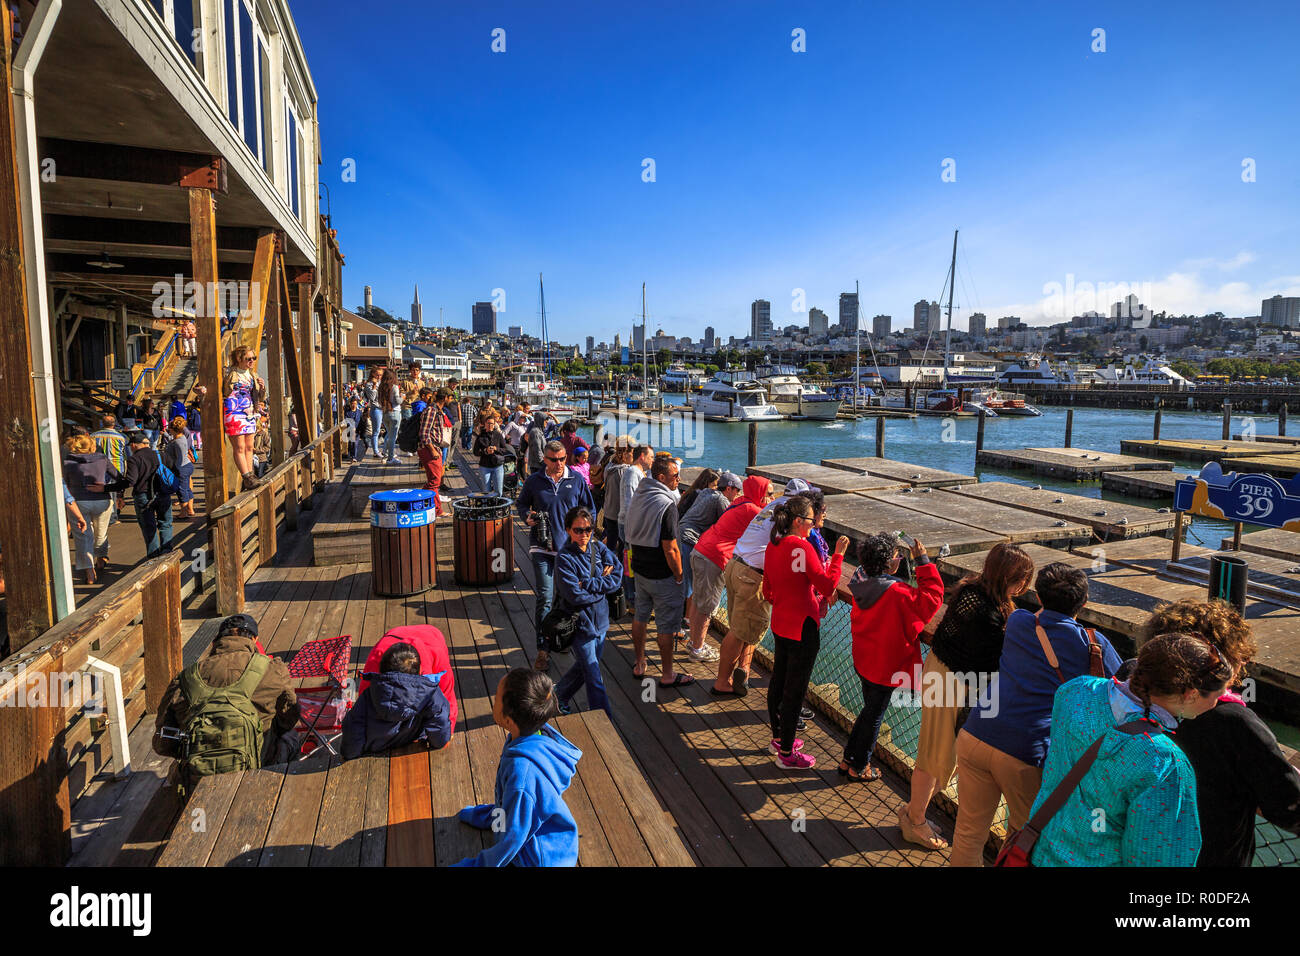 San Francisco, Kalifornien, USA - 14. August 2016: Touristen in San Francisco Pier 39, beliebte Attraktion für Seelöwen. Boote und Yachten angedockt am Fisherman's Wharf. San Francisco Stadtbild. Stockfoto